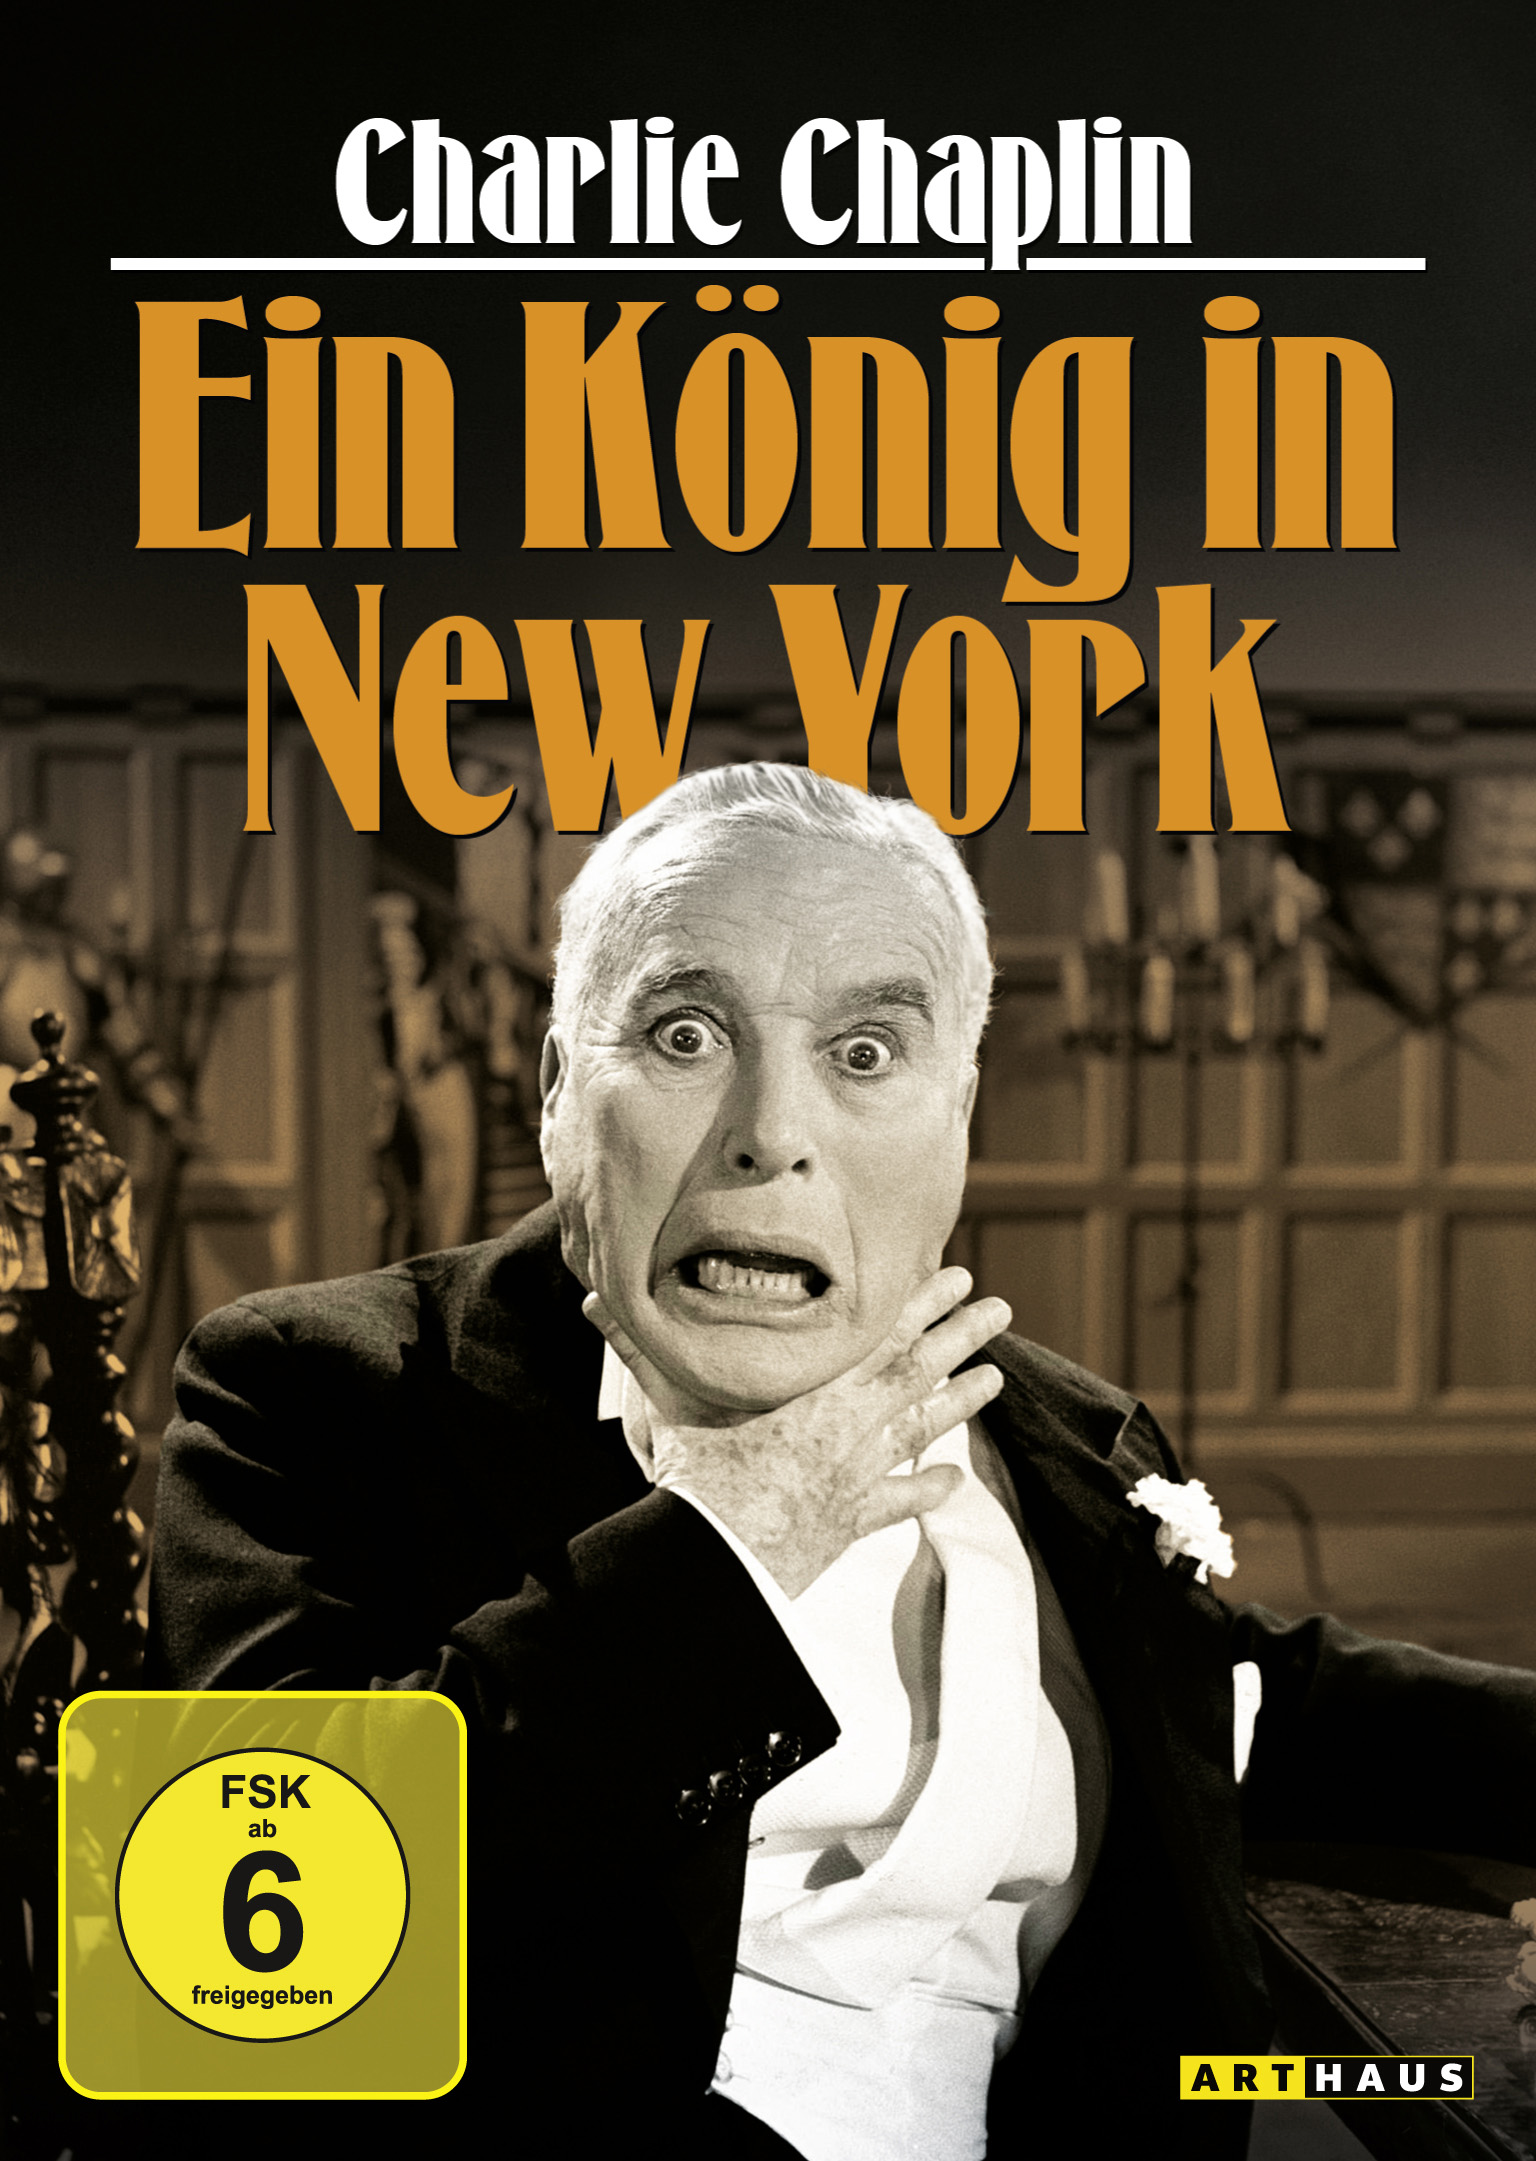 Ein Chaplin in DVD New Charlie König York -